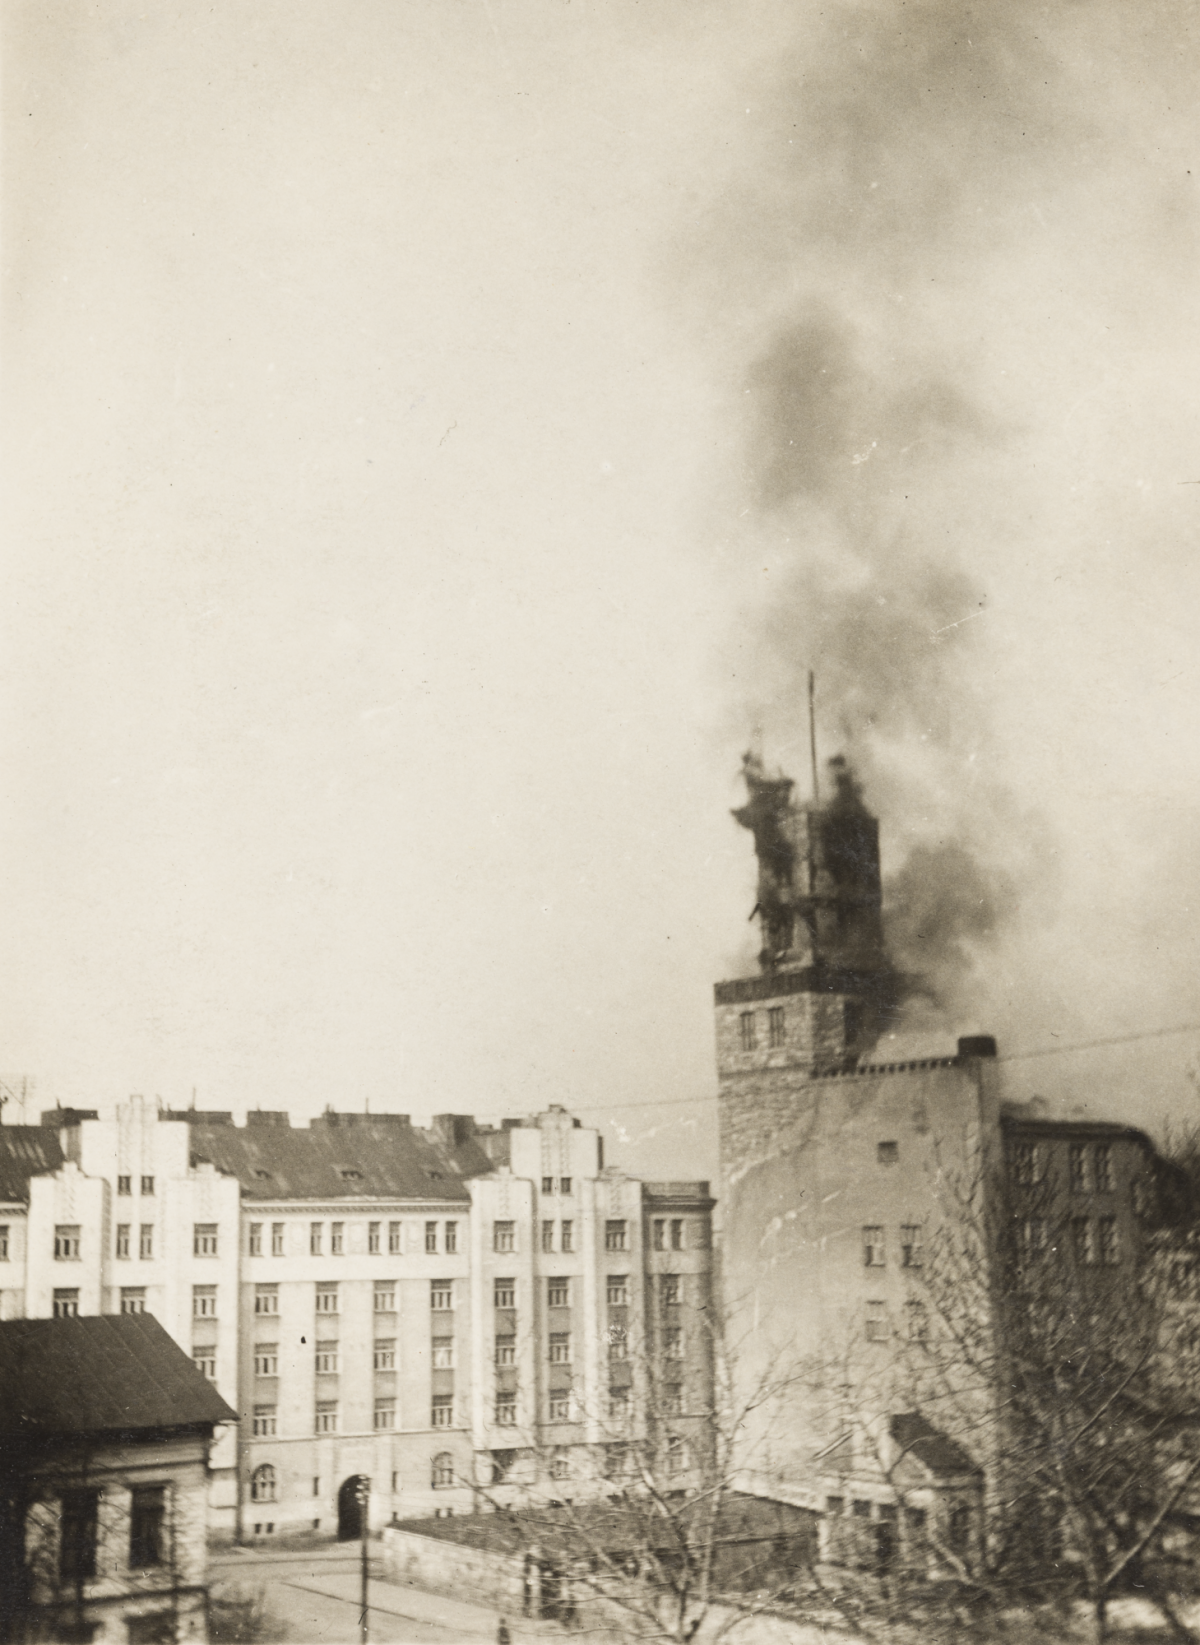 Tornet på Folkets hus brinner. Svart rök stiger från tornet.